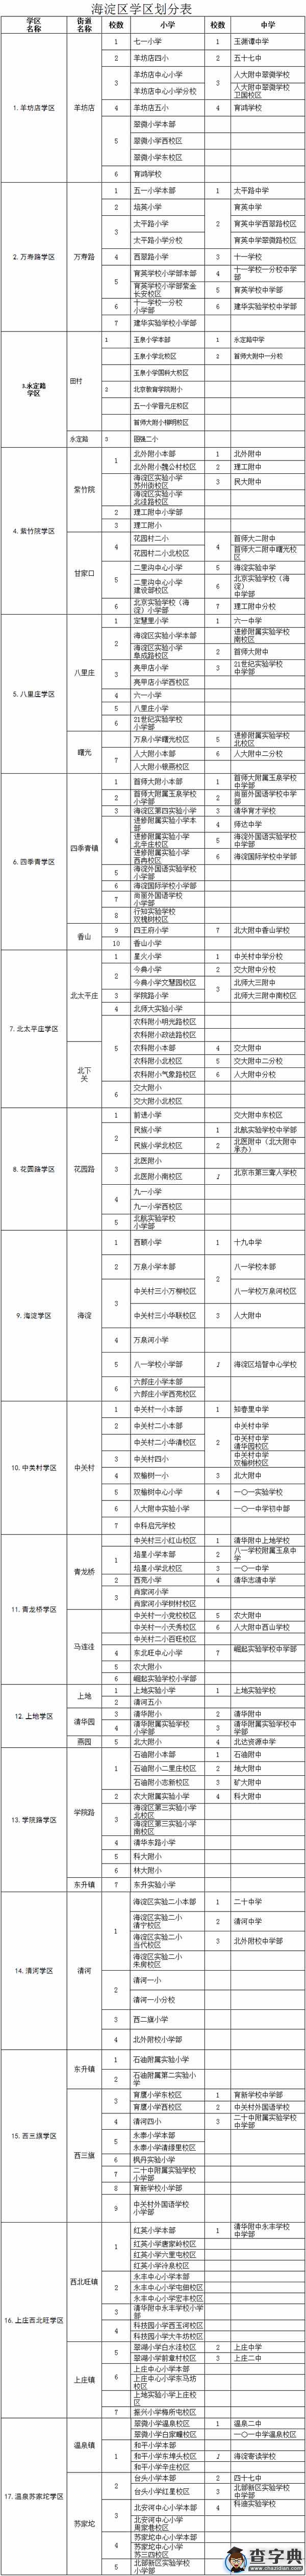 北京海淀成立17学区 小升初派位区域基本不变1